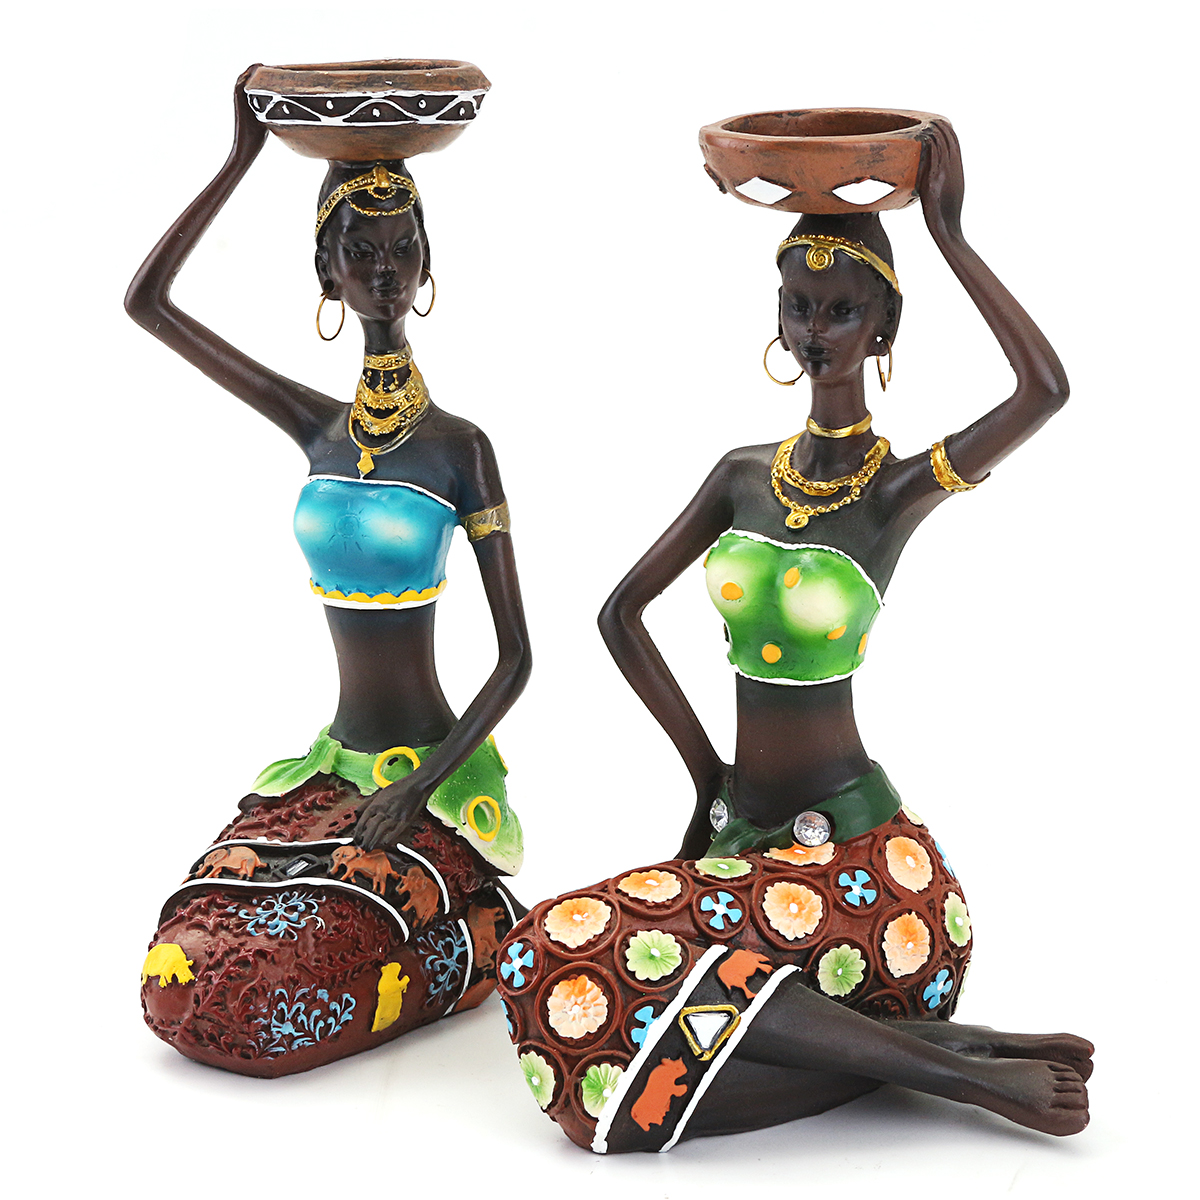 Lot de 2pcs Chandeliers Statue Femme Africaine en Resine Accessoire Maison Decoratif Ornement Artisanat